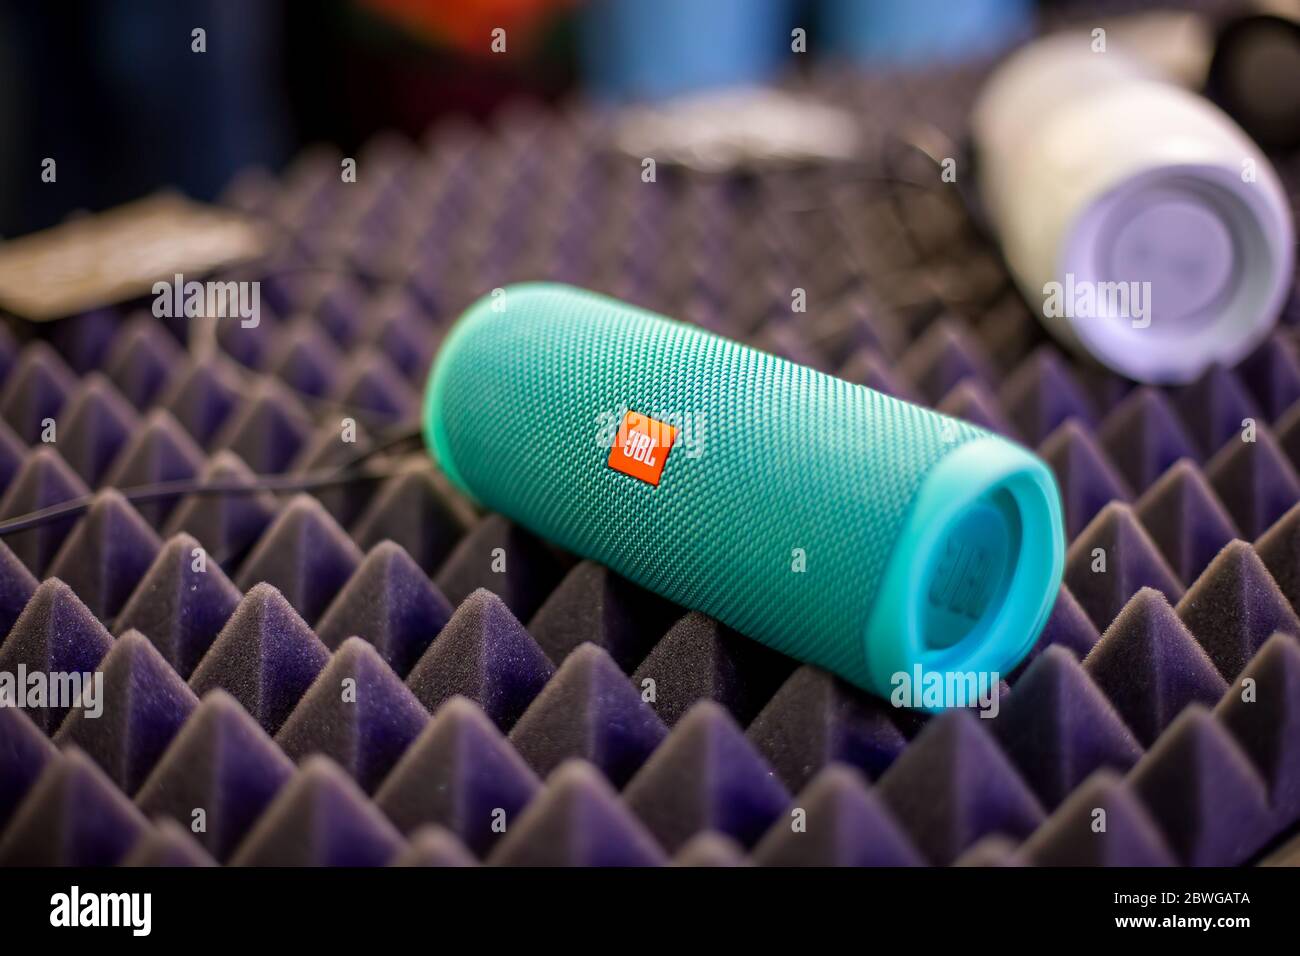 Moskau, Russland - 04. Oktober 2019: Nahaufnahme des blauen tragbaren wasserdichten bluetooth-Musiklautsprechers JBL Charge 4 ruht auf einer Lärmschutzabdeckung. Weich Stockfoto